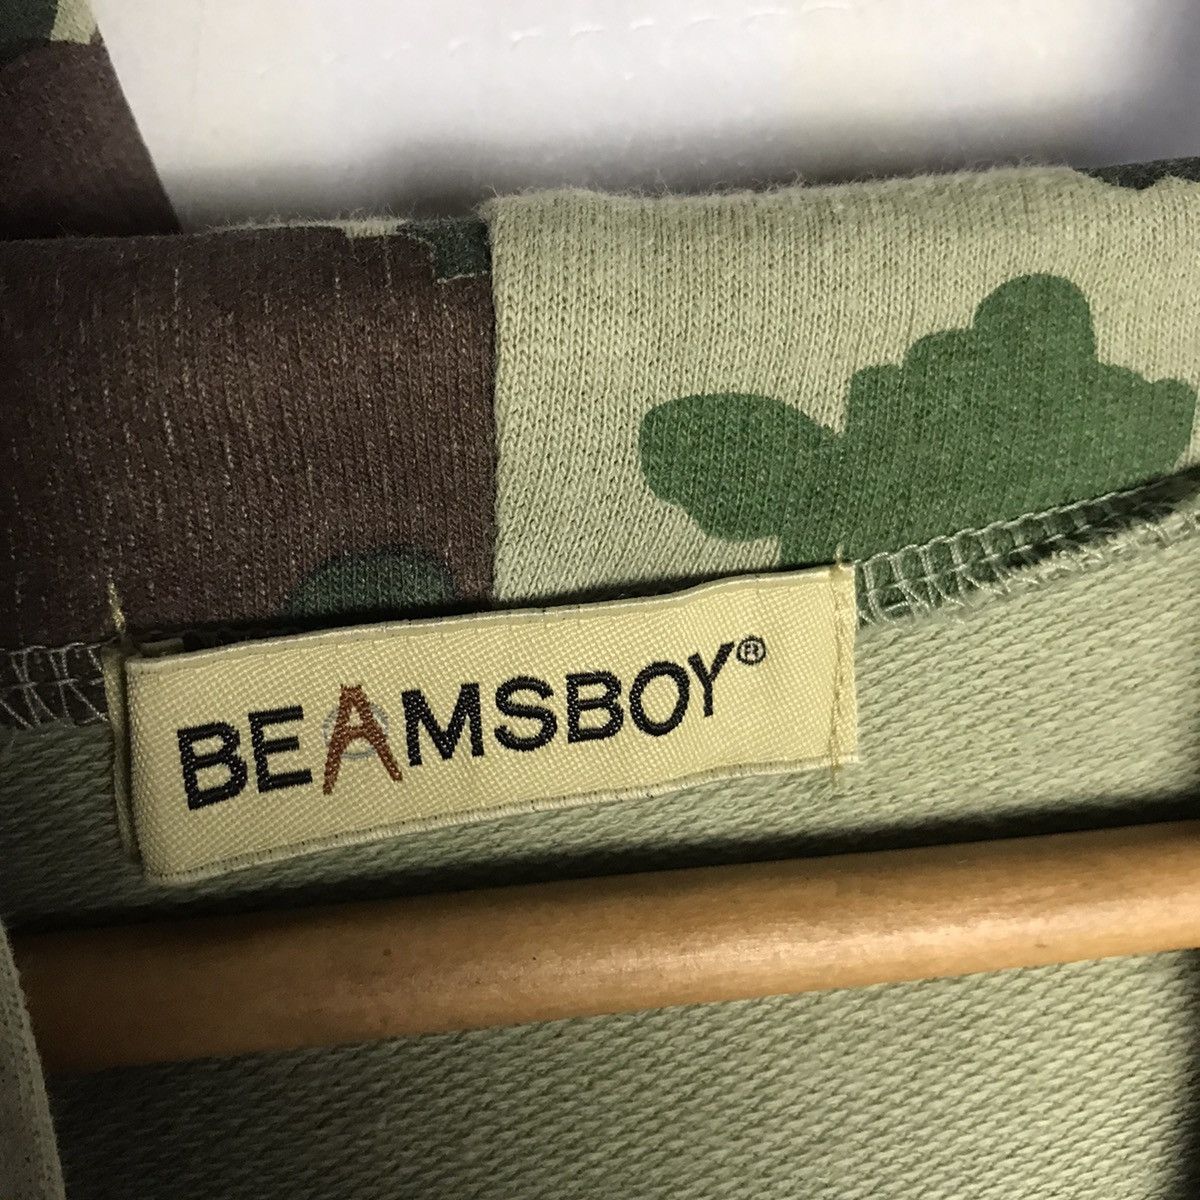 Beamsboy sheep camouflage patern zip up hoodie - 7